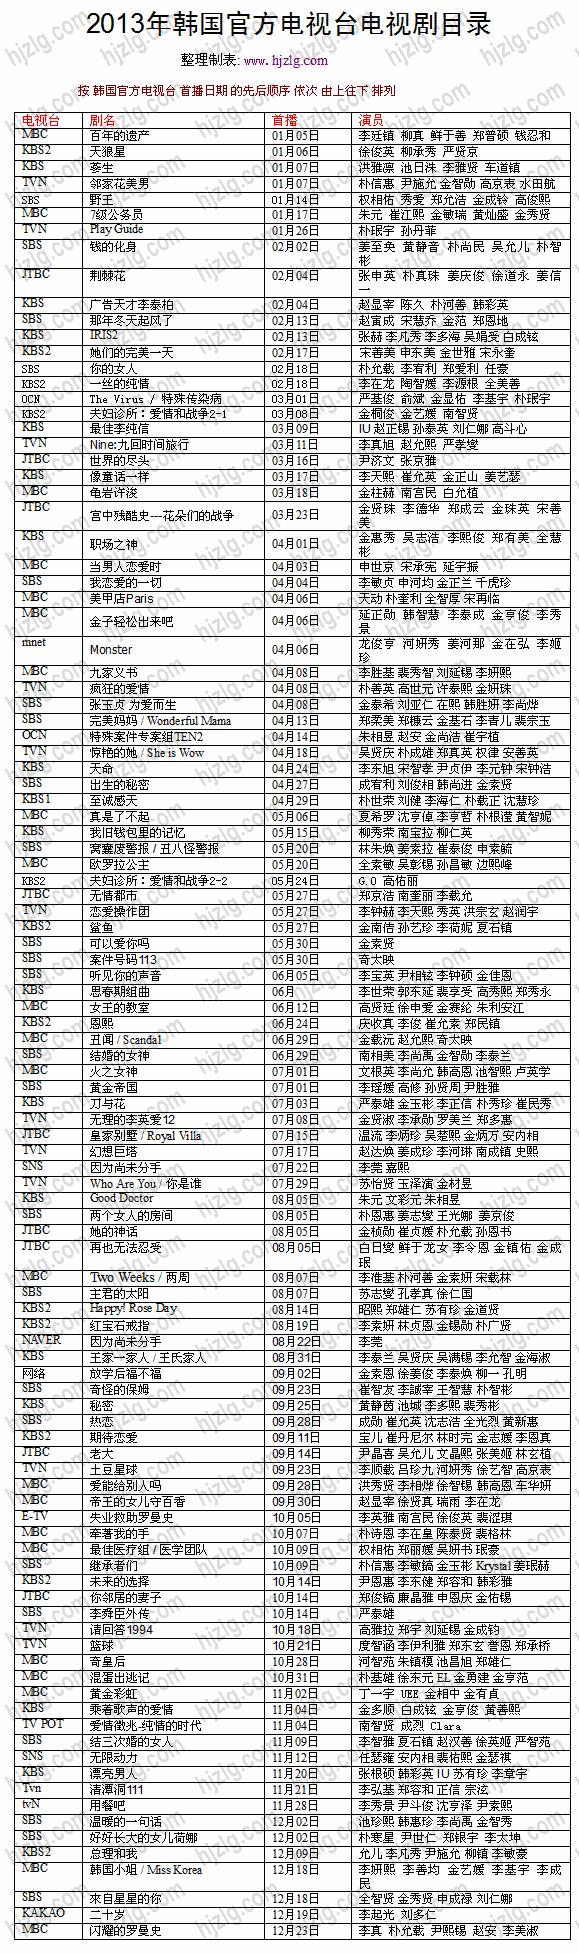 2013 年韩国官方电视剧目录